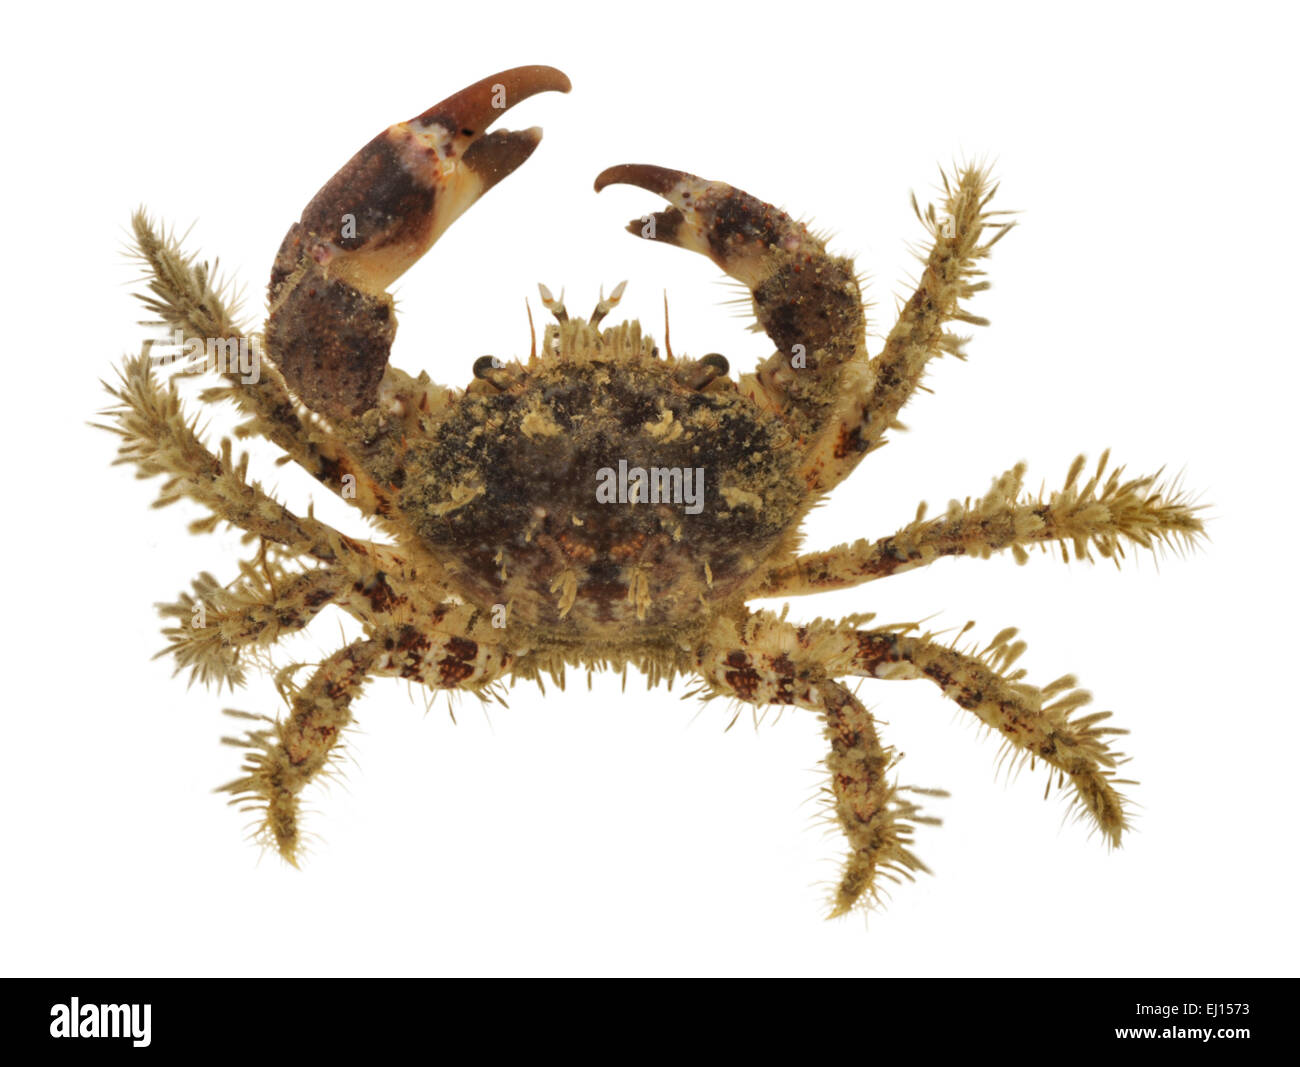 Hairy Crab - Pilumnus hirtellus Stock Photo